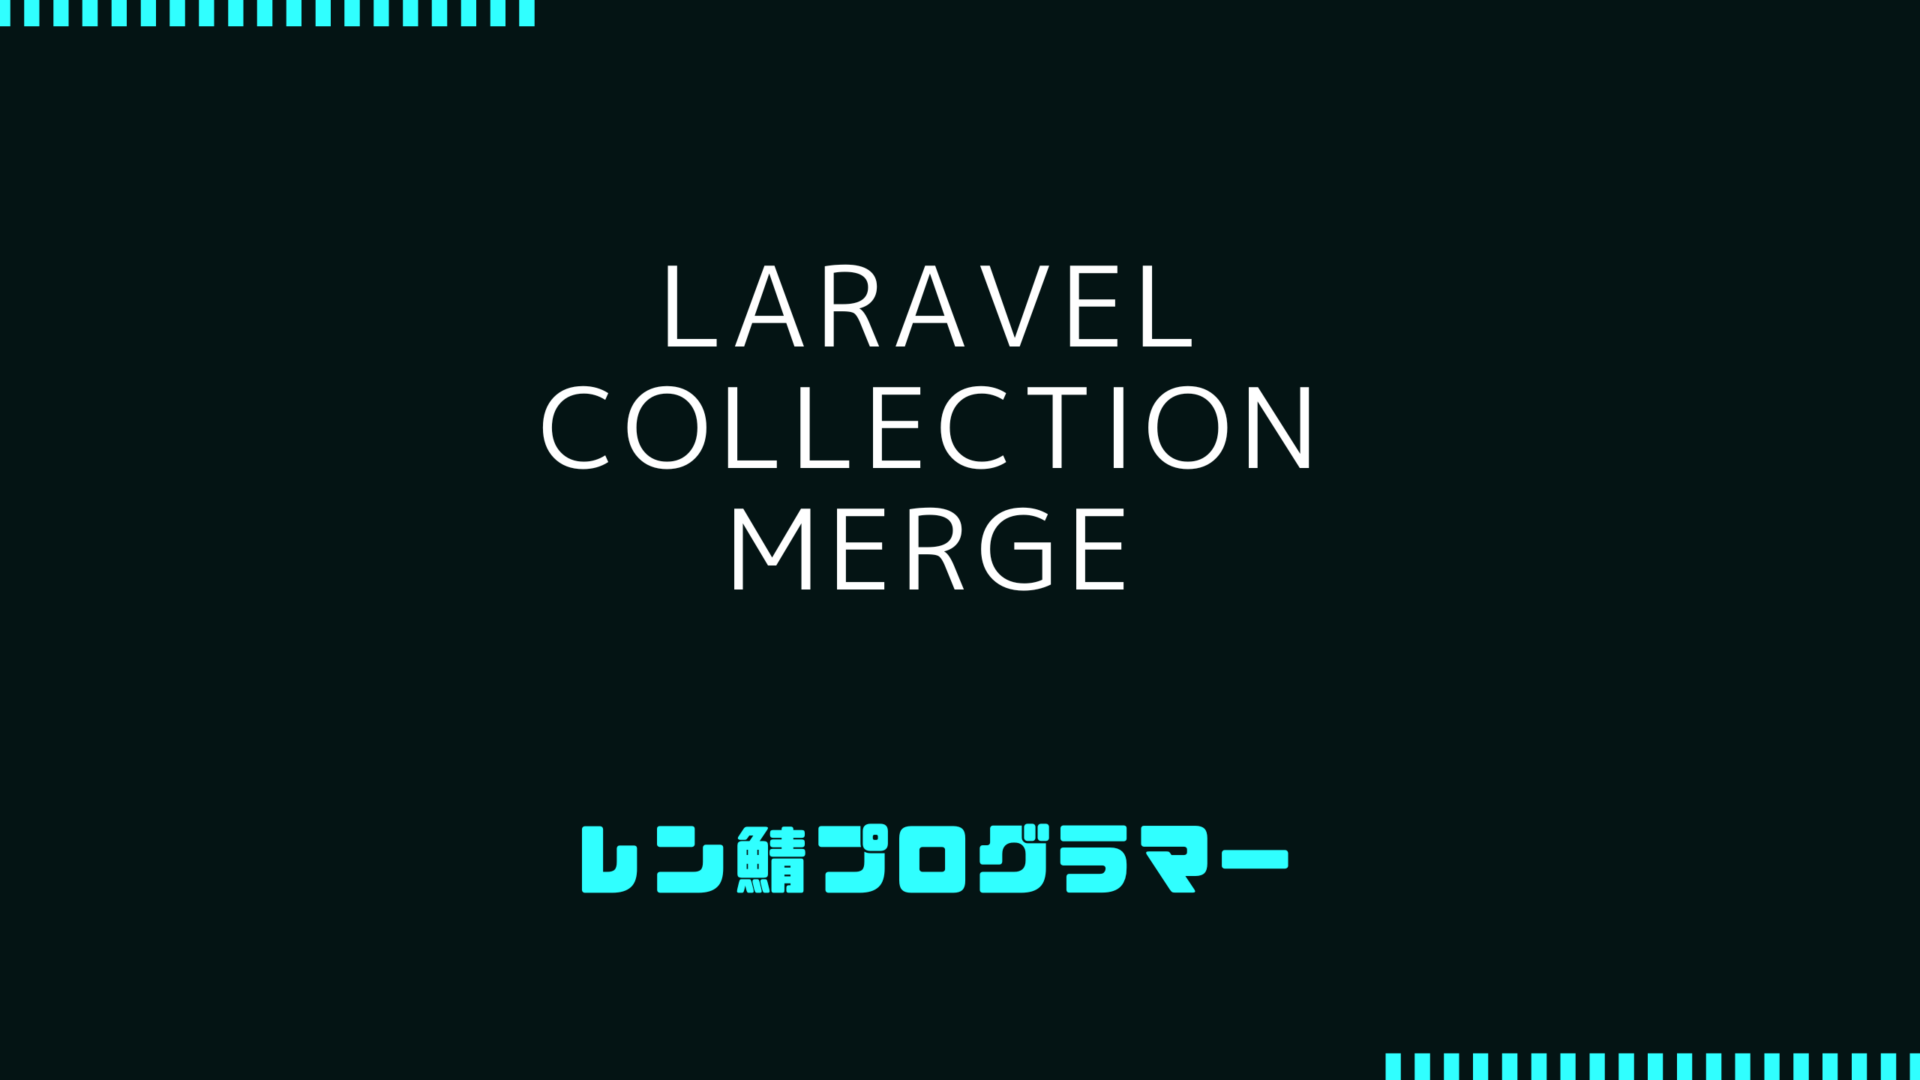 Laravel Collectionのmergeでデータ結合処理を深掘り解説